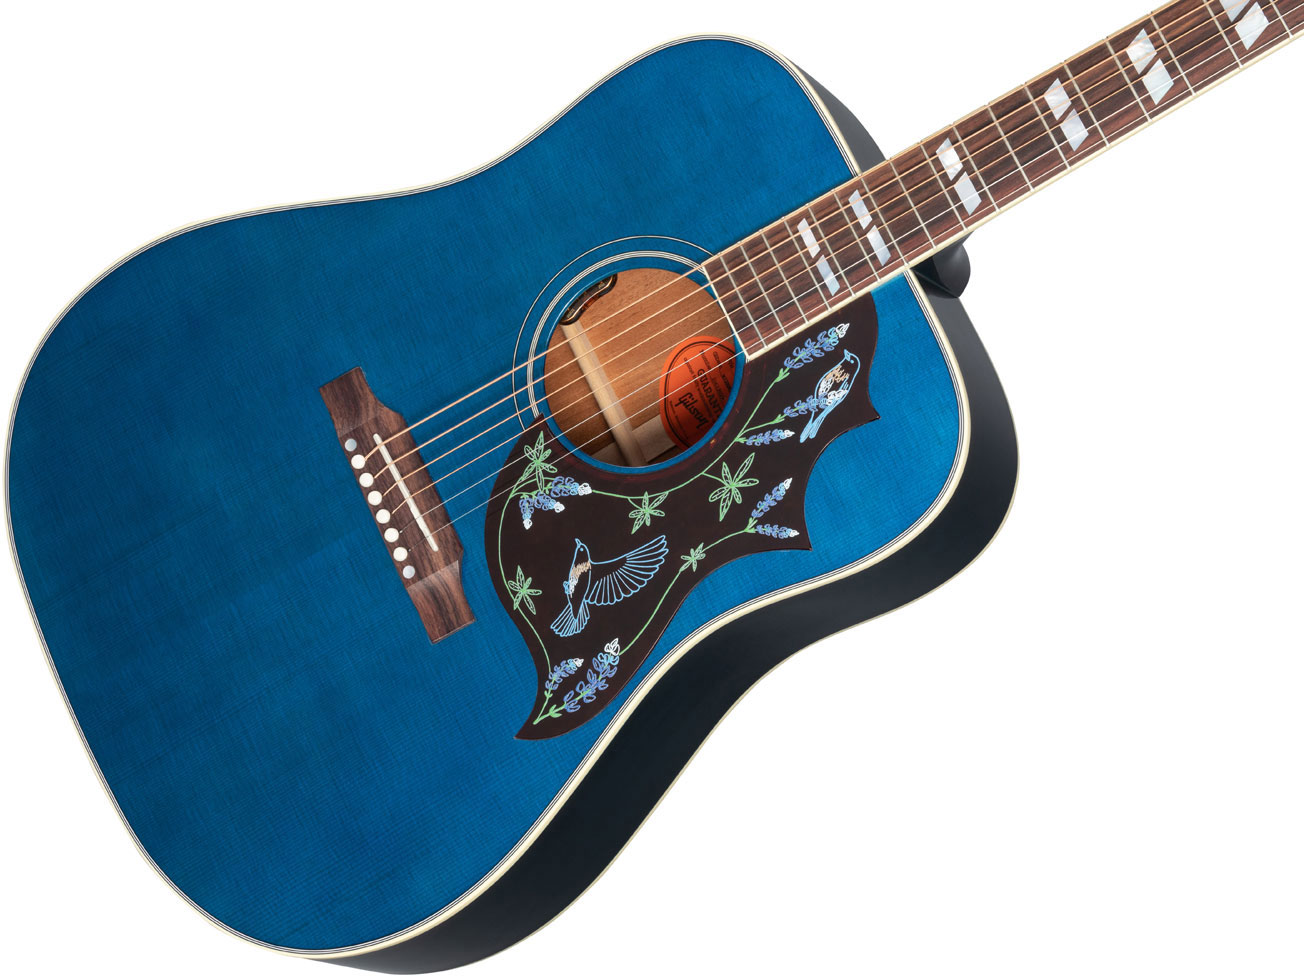 Gibson Miranda Lambert Bluebird Dreadnought Epicea Acajou Rw - Bluebonnet - Guitare Electro Acoustique - Variation 3